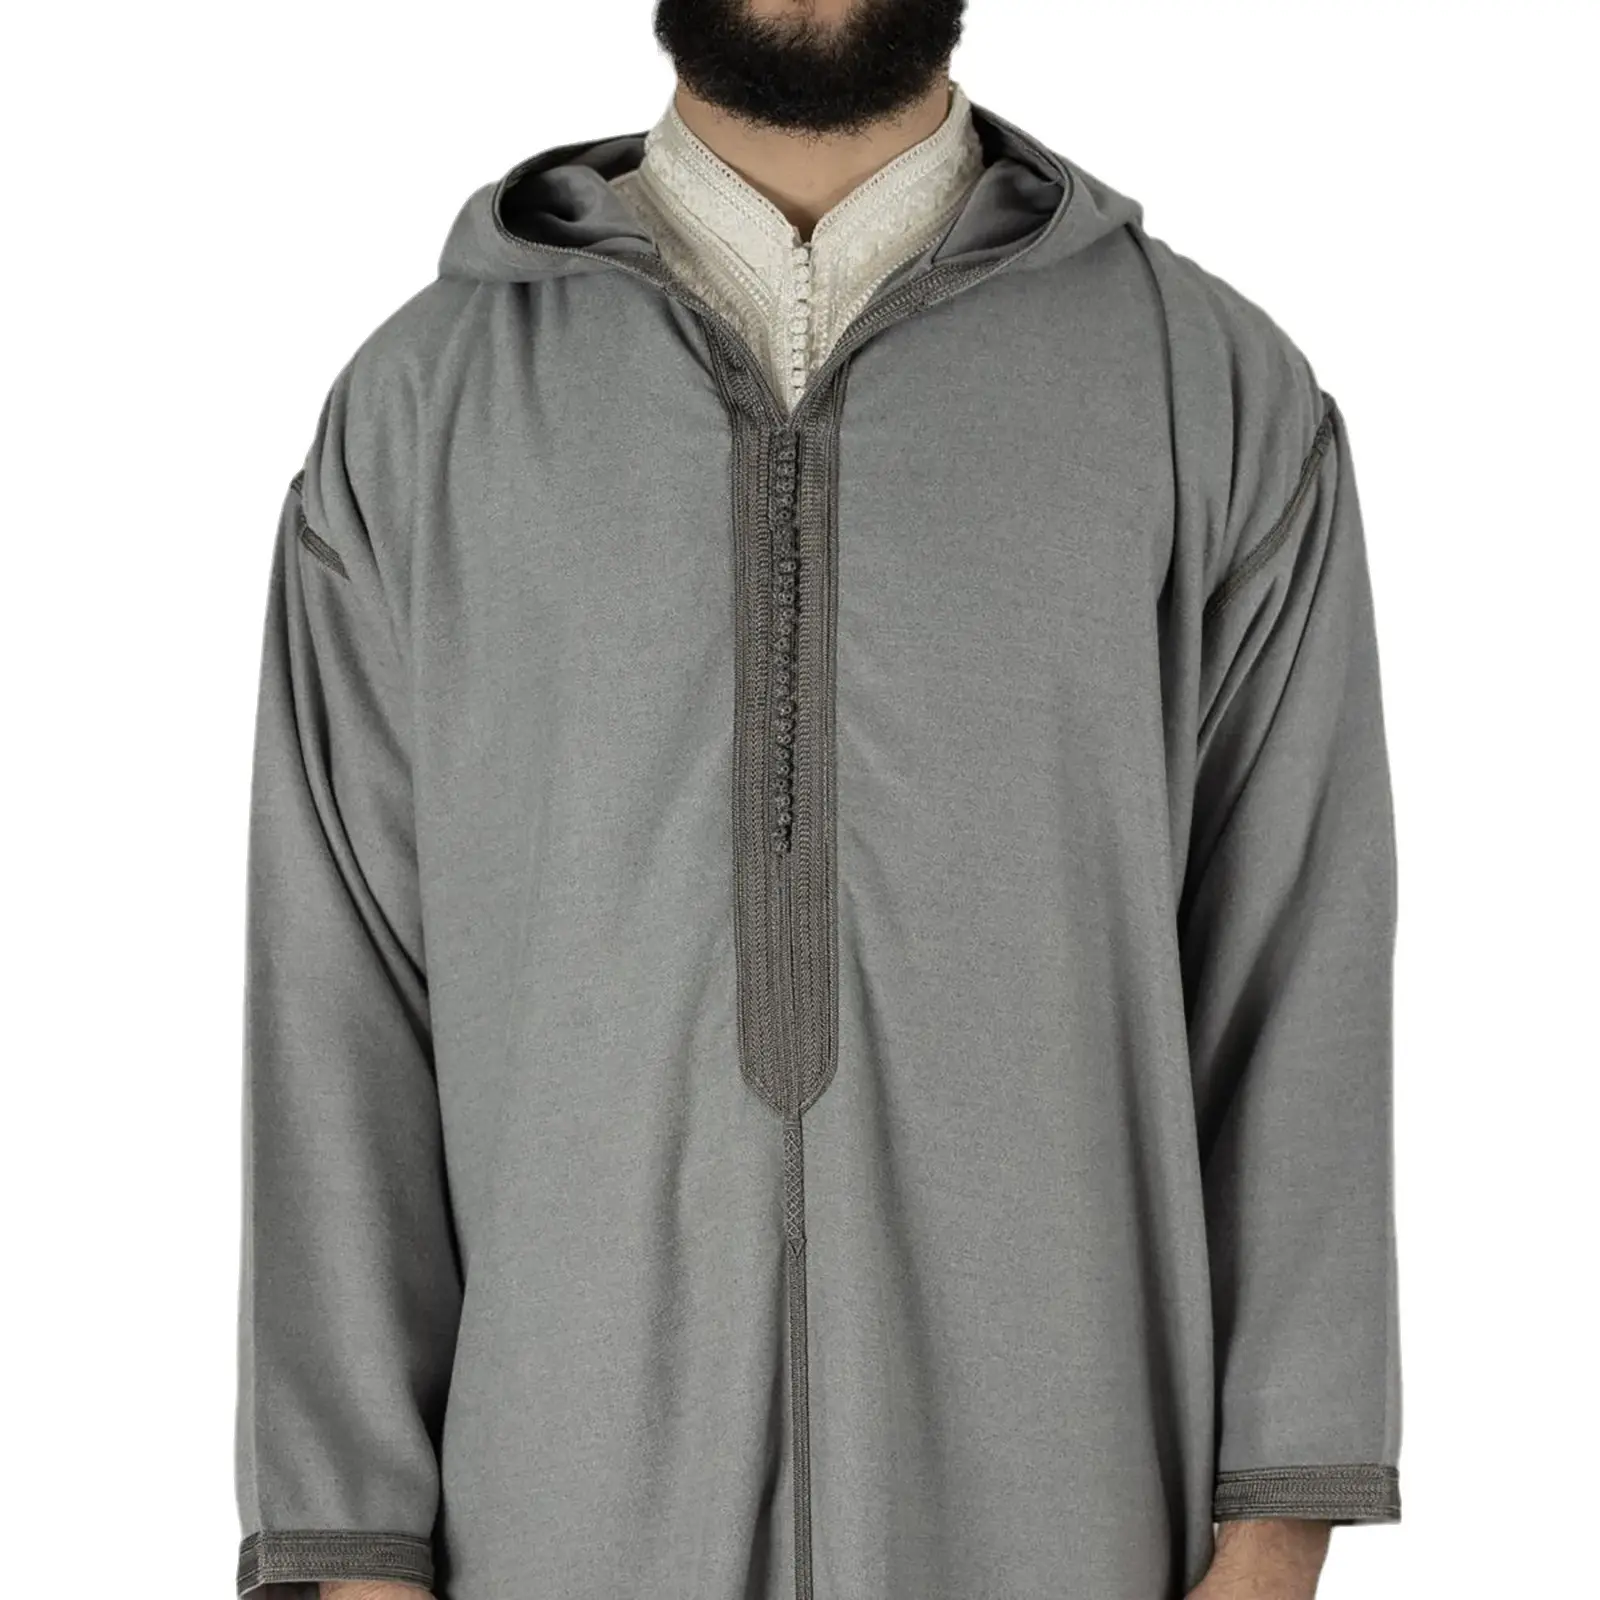 Camicia a maniche lunghe con cappuccio musulmana arabo da uomo ricamata mediorientale